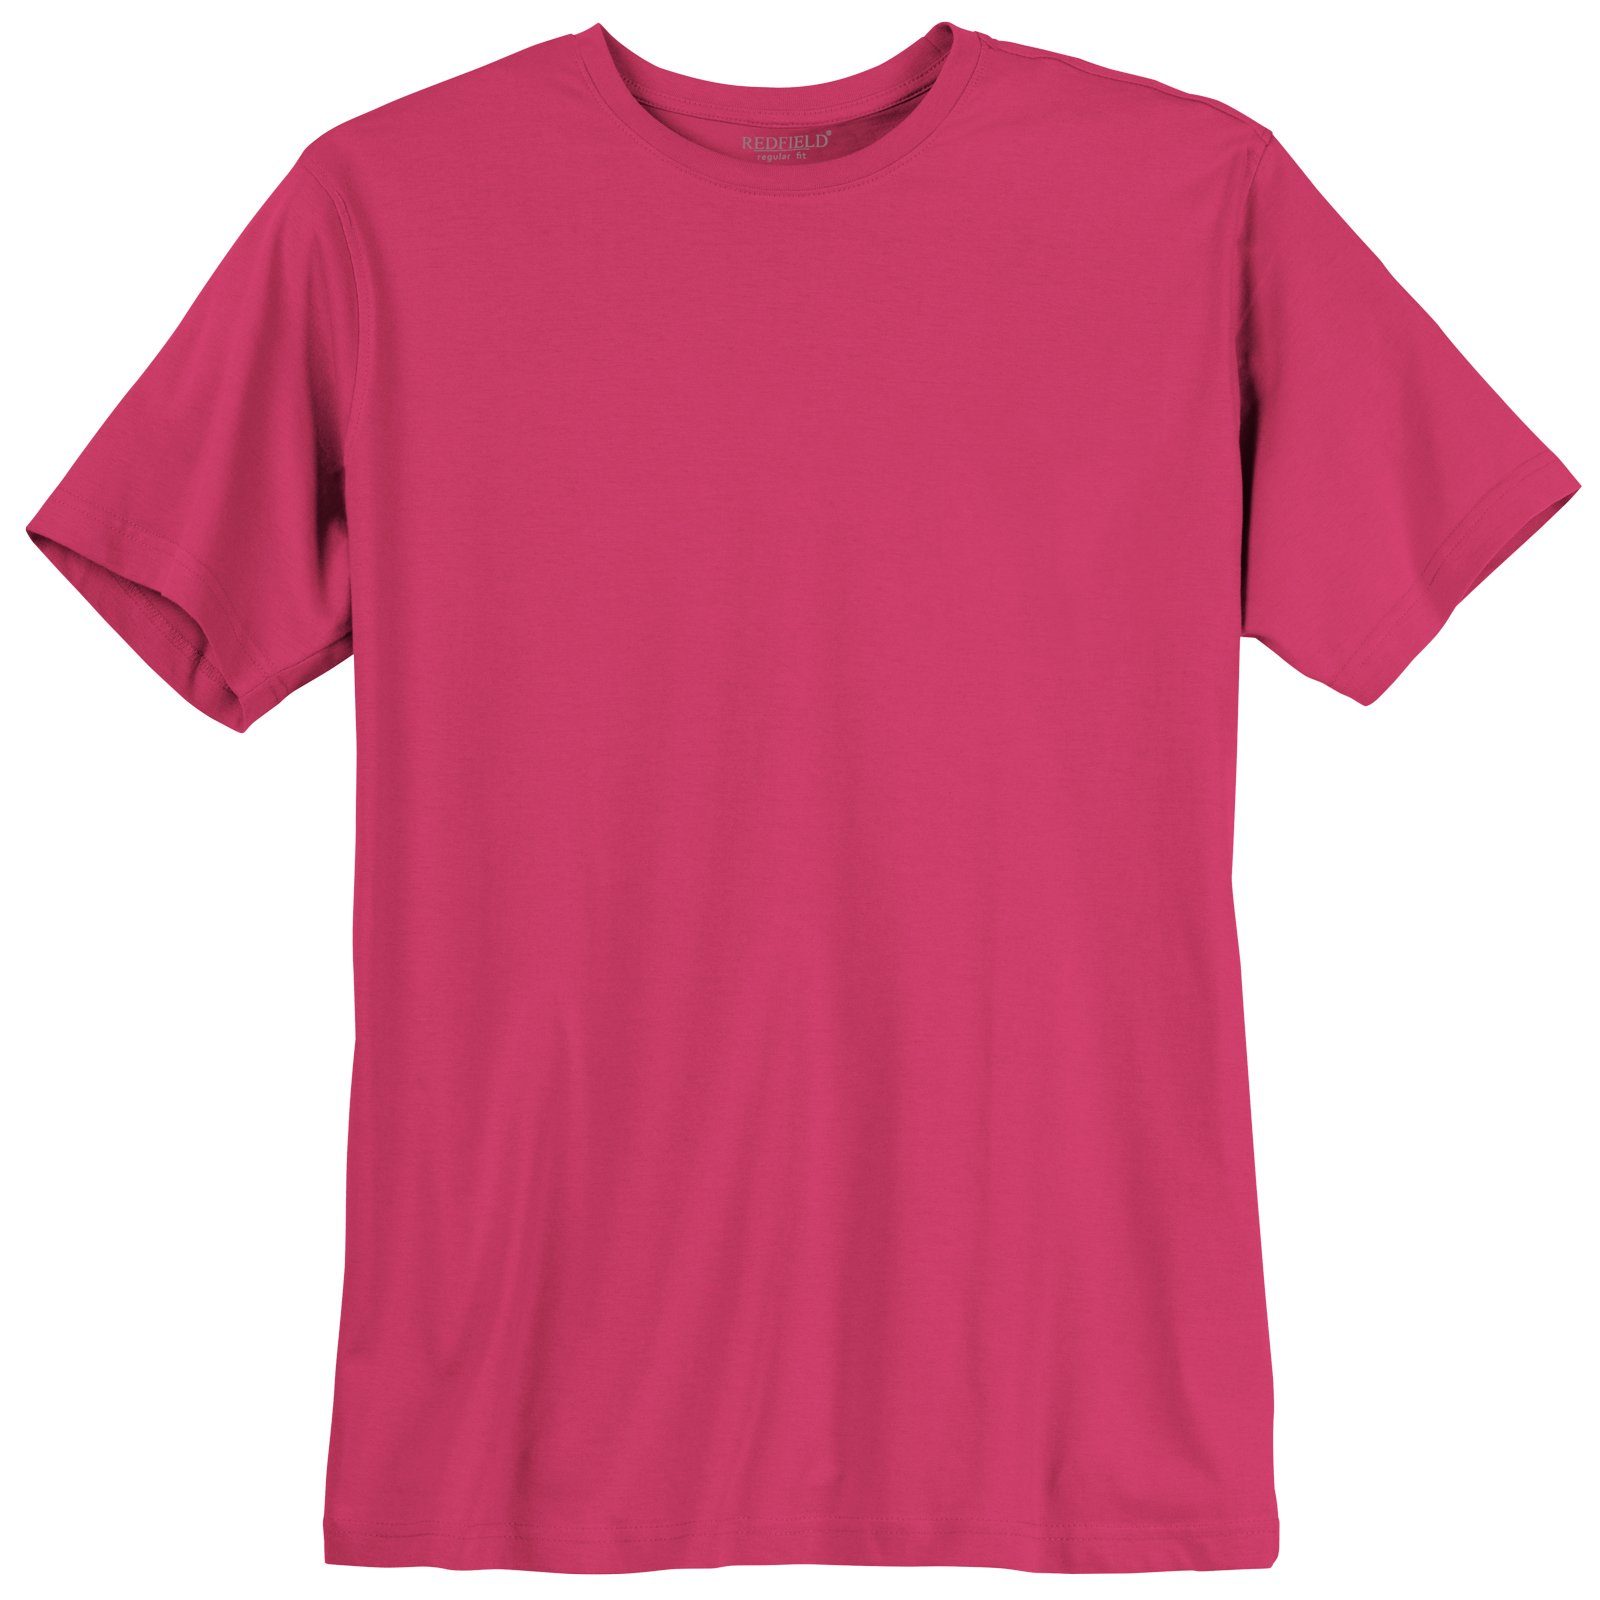 Basic Übergrößen T-Shirt Rundhalsshirt fuchsia redfield Redfield